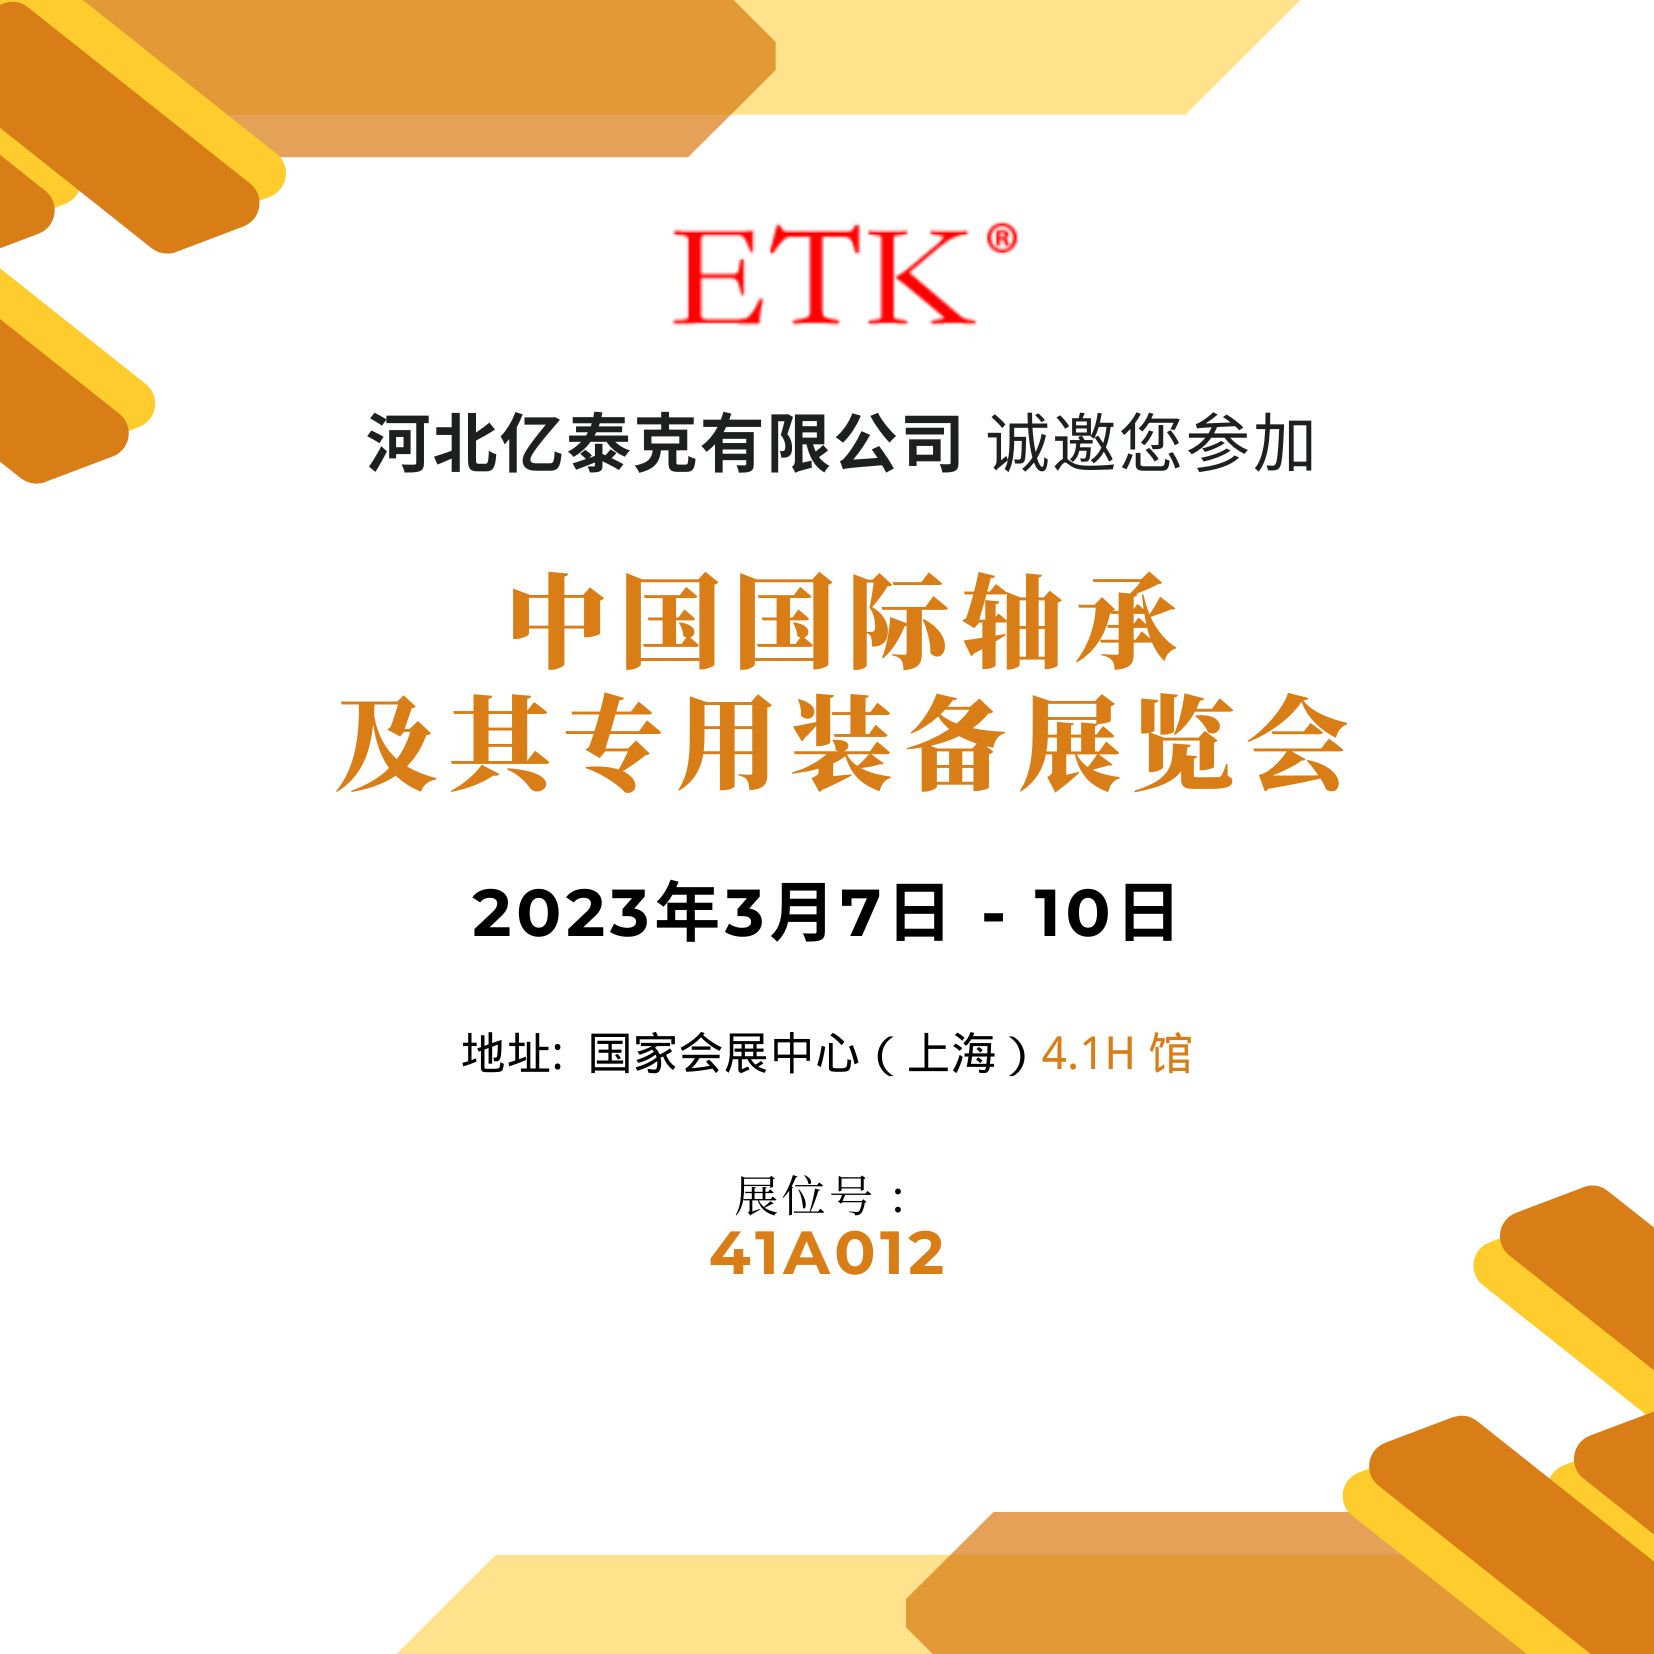 ETK邀您一起参加2023中国国际轴承及其专用装备展览会